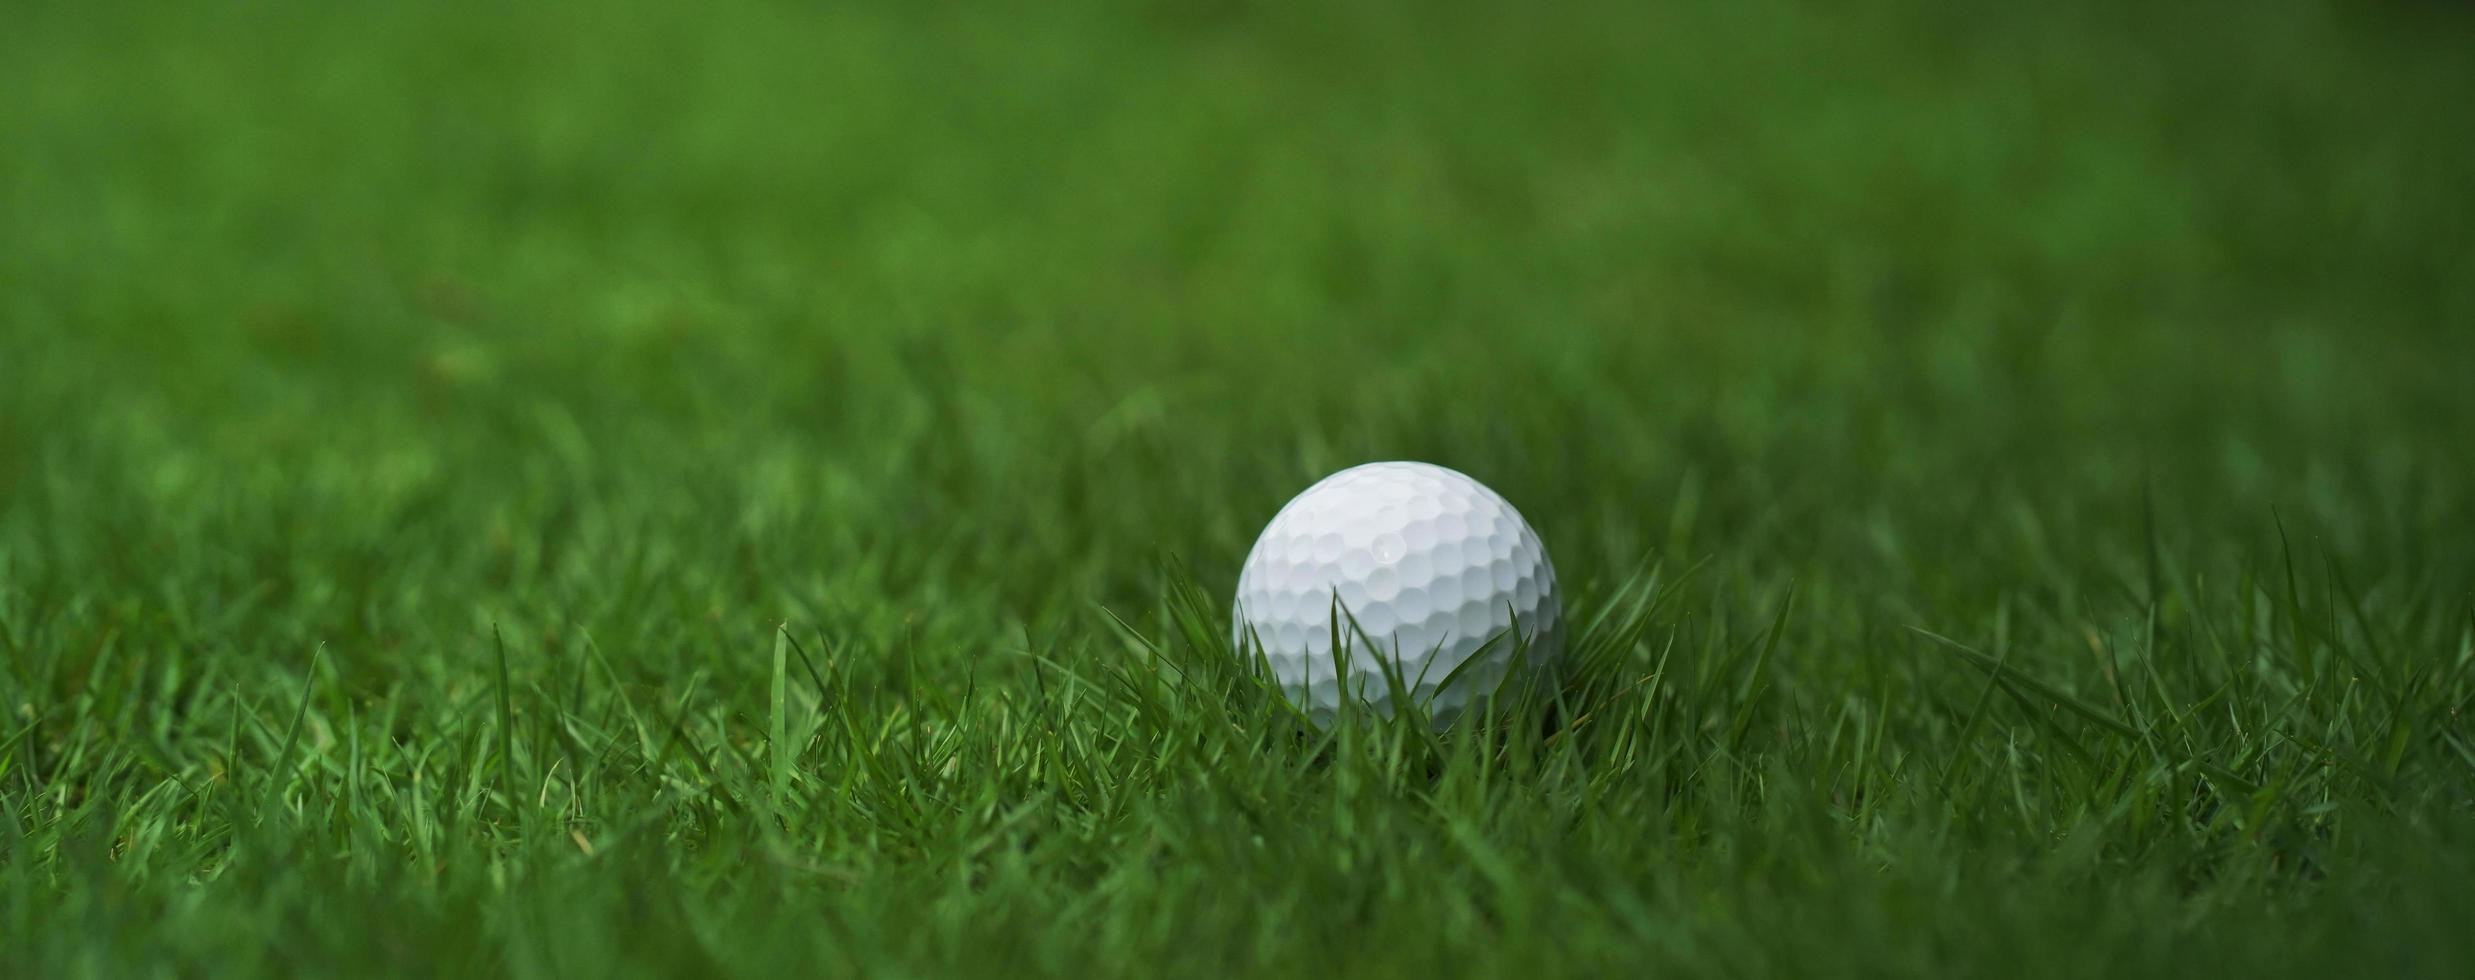 golfbal op groen gras achtergrond foto